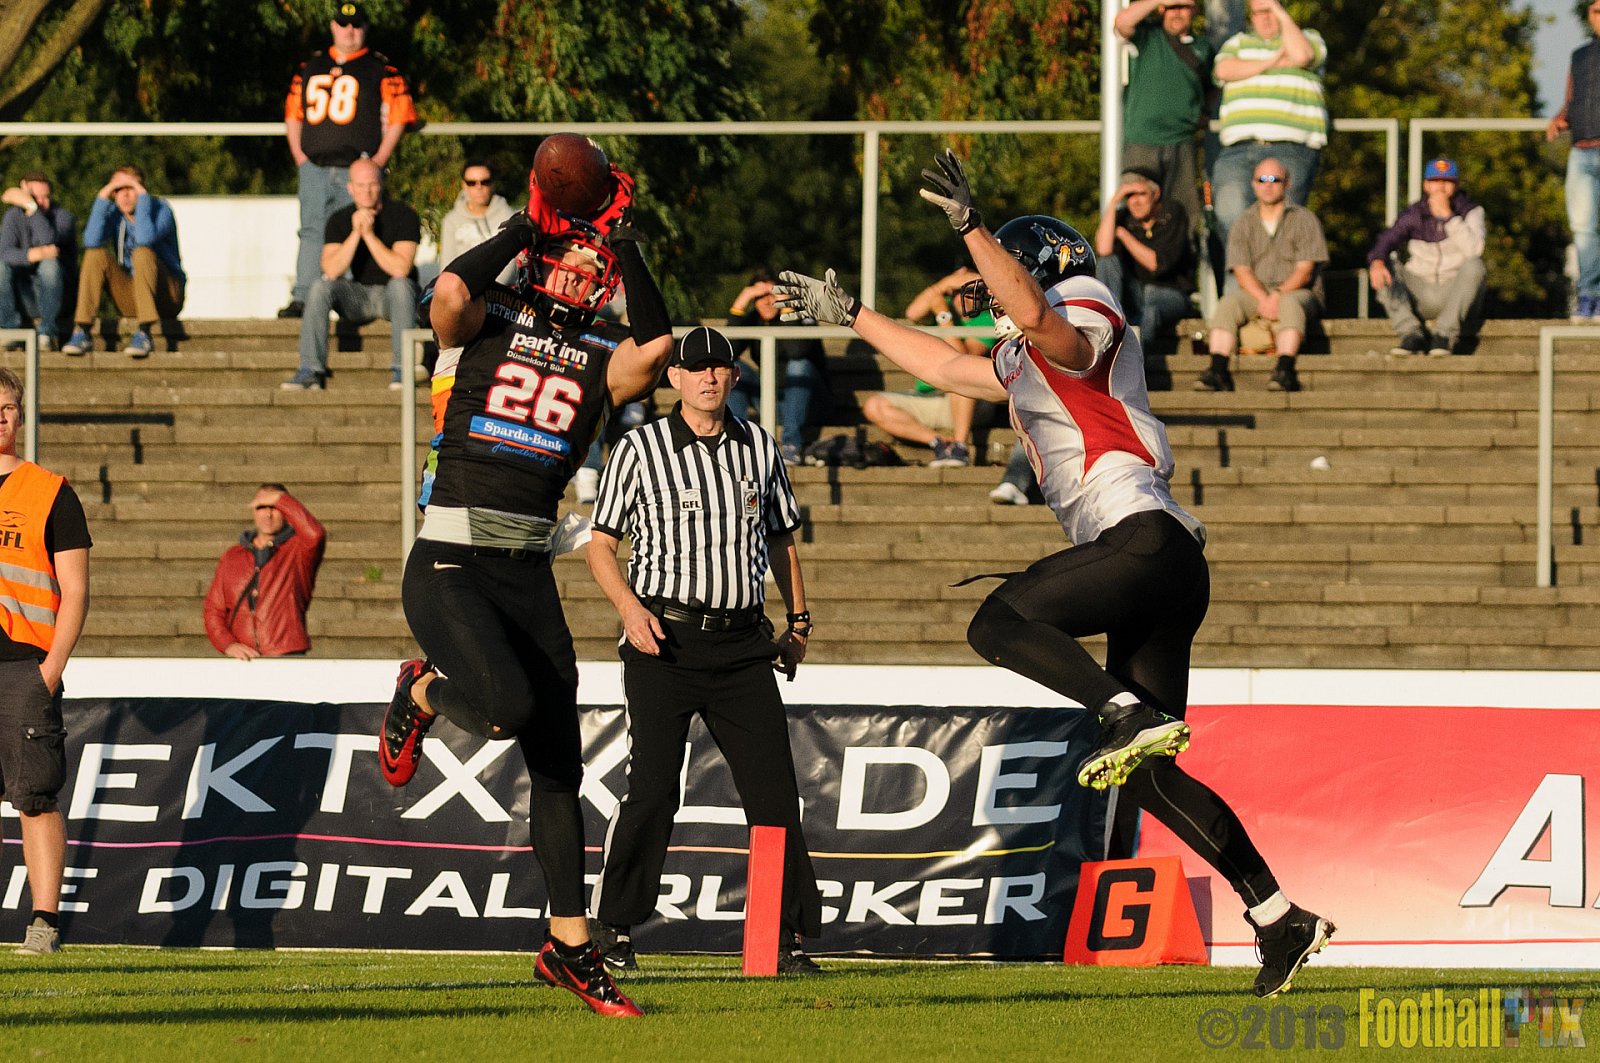 Düsseldorf Panther vs. Cologne Falcons - 31.08.2013 GFL Nord: Düsseldorf Panther vs. Cologne Falcons (28:21) 